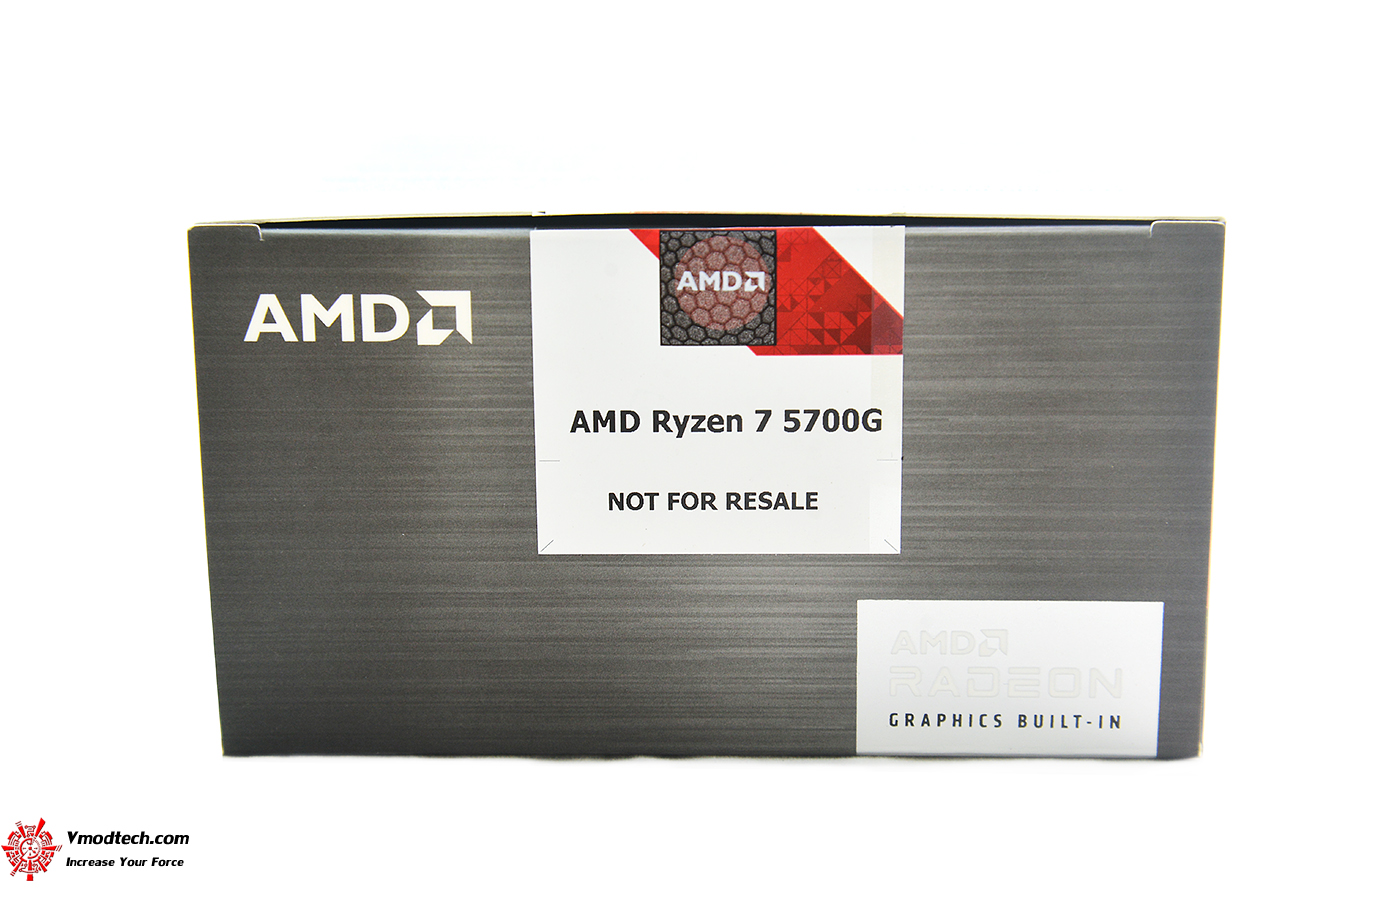 dsc 6950 AMD RYZEN 7 5700G PROCESSOR REVIEW